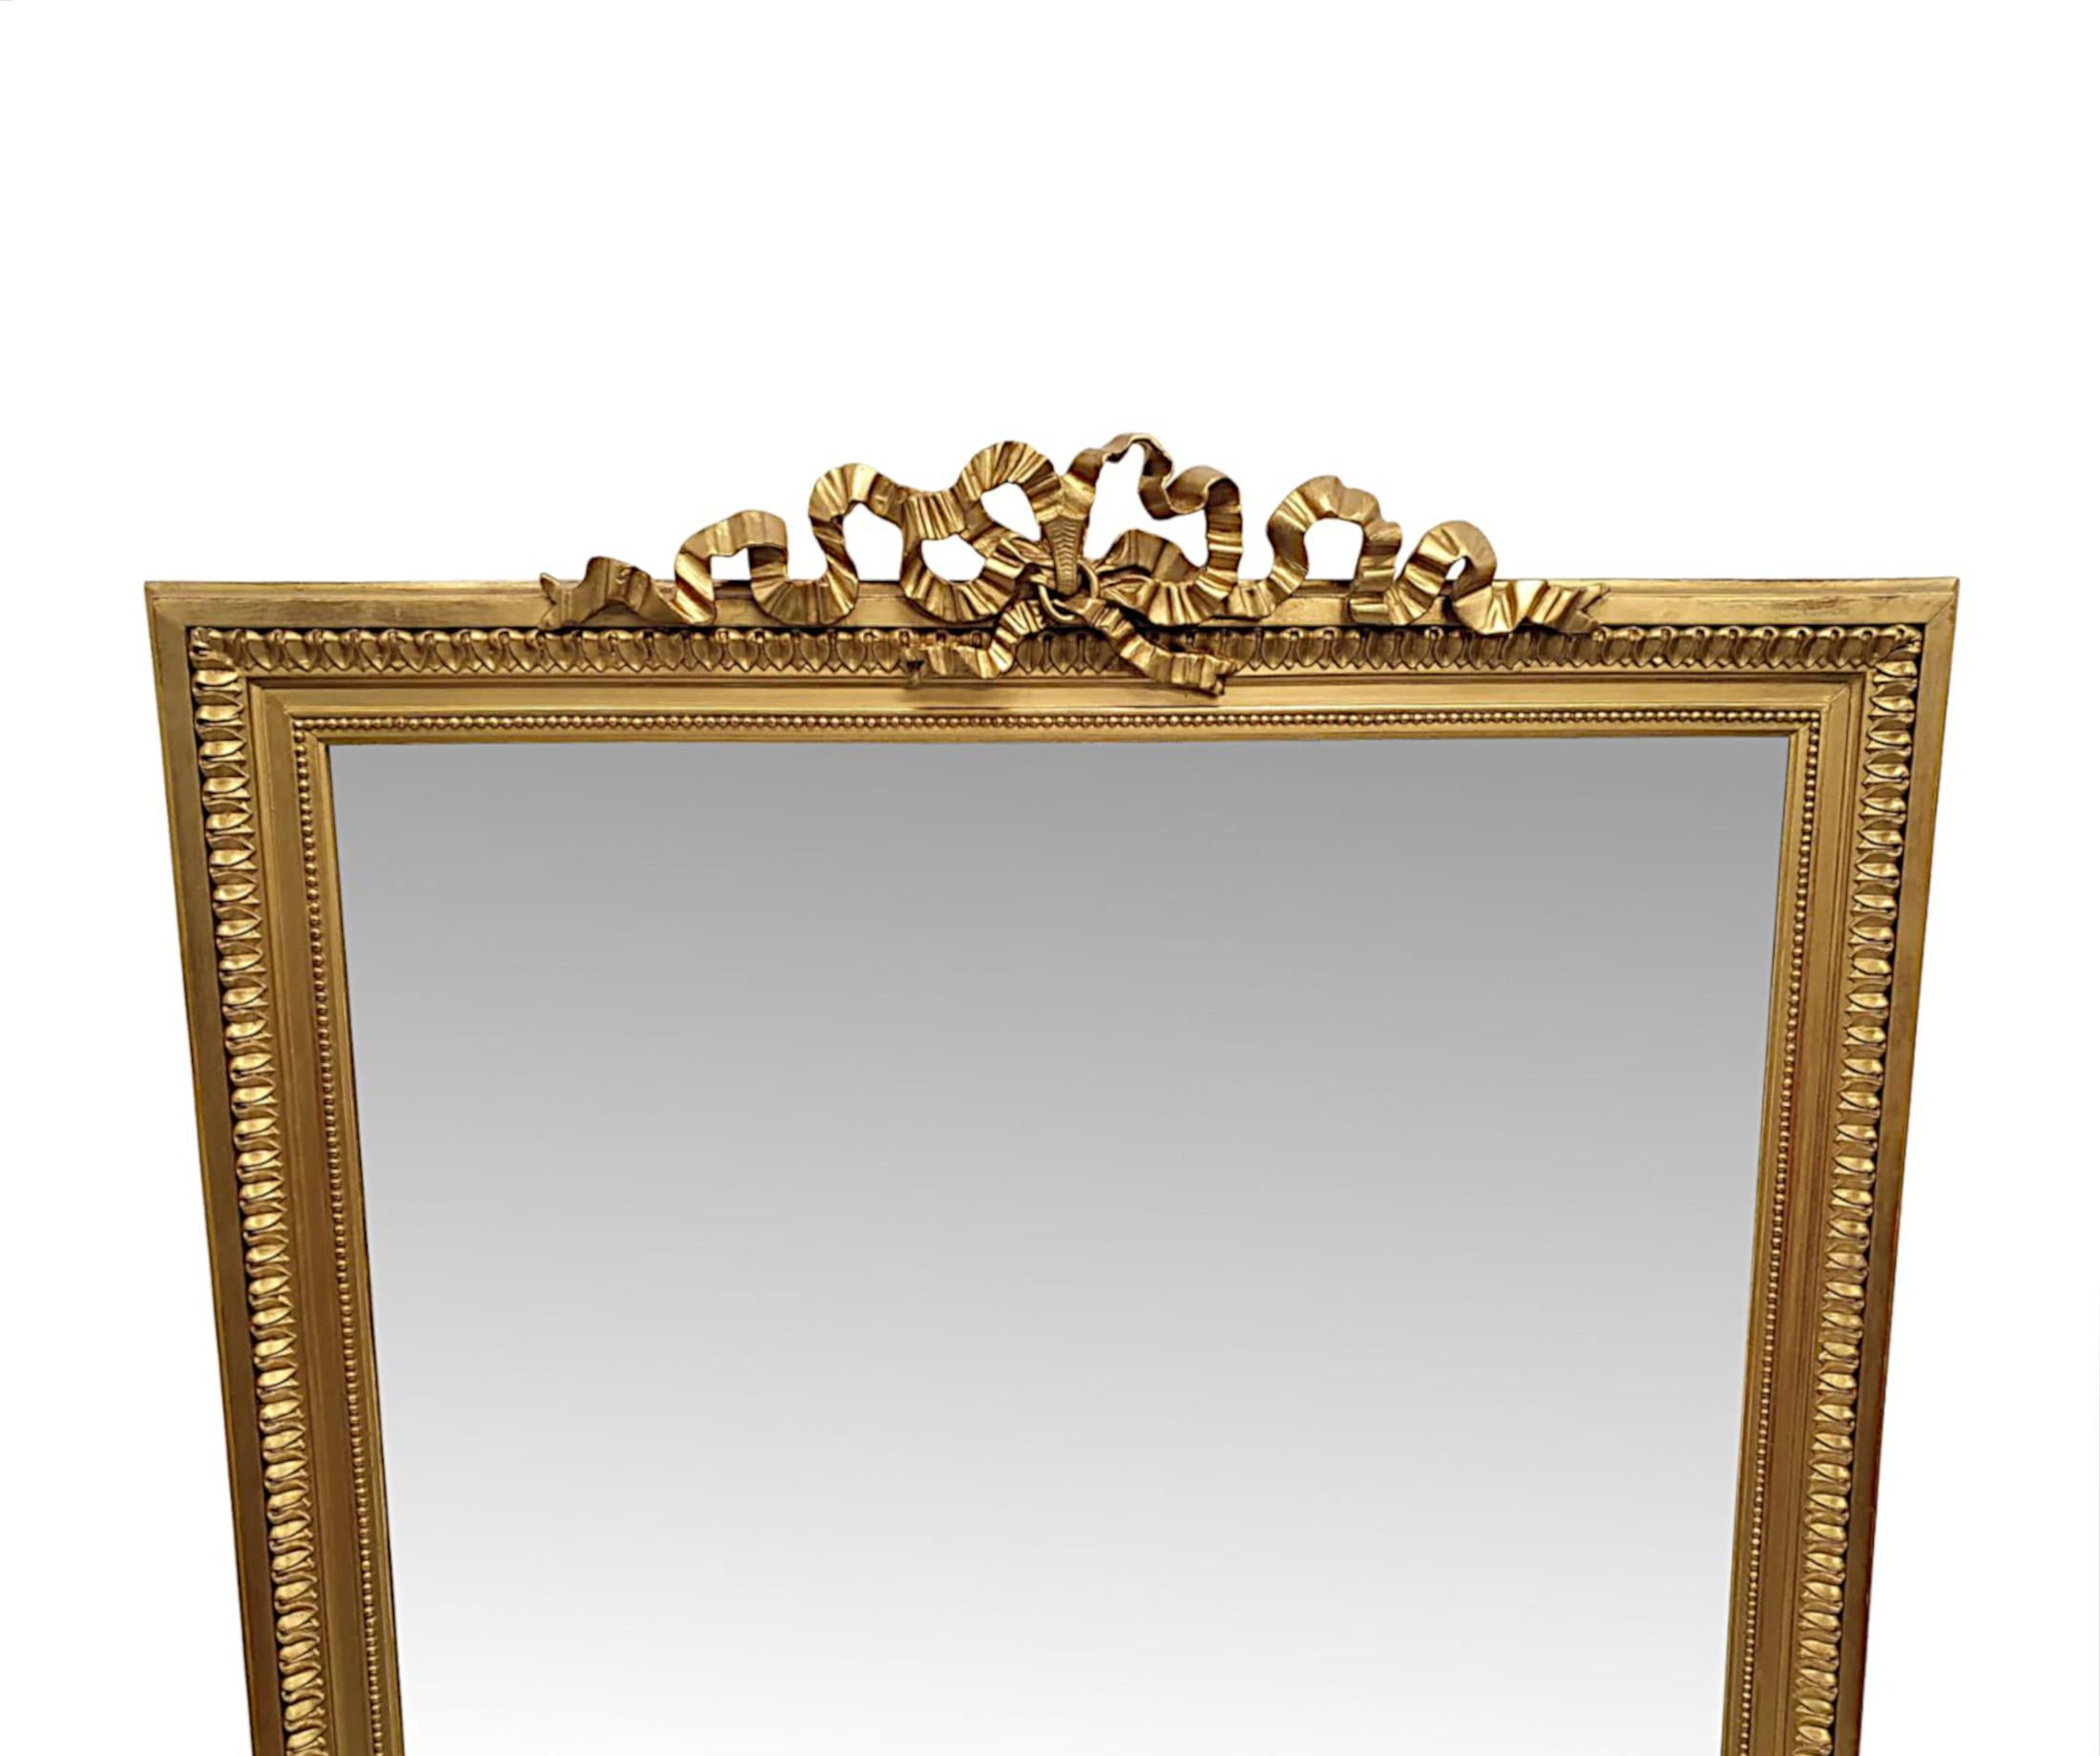 Eine atemberaubende 19. Jahrhundert Vergoldung overmantle Spiegel von großen Proportionen.  Die rechteckige Spiegelglasplatte befindet sich in einem fabelhaften, handgeschnitzten, geformten und durchbrochenen Rahmen aus Goldholz mit prächtigen,